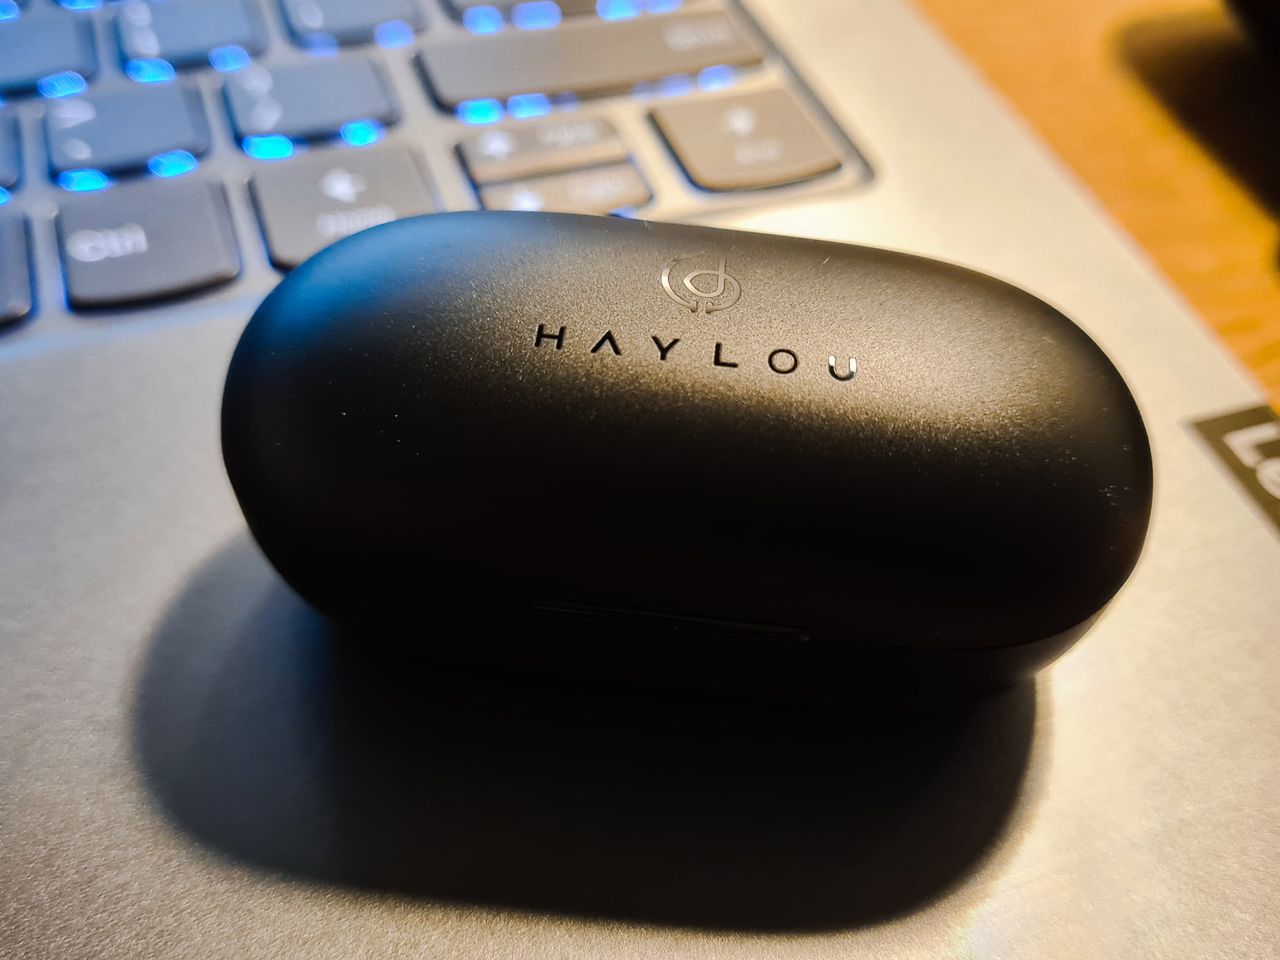 Krótki test Haylou GT2S: Niedrogie słuchawki bezprzewodowe